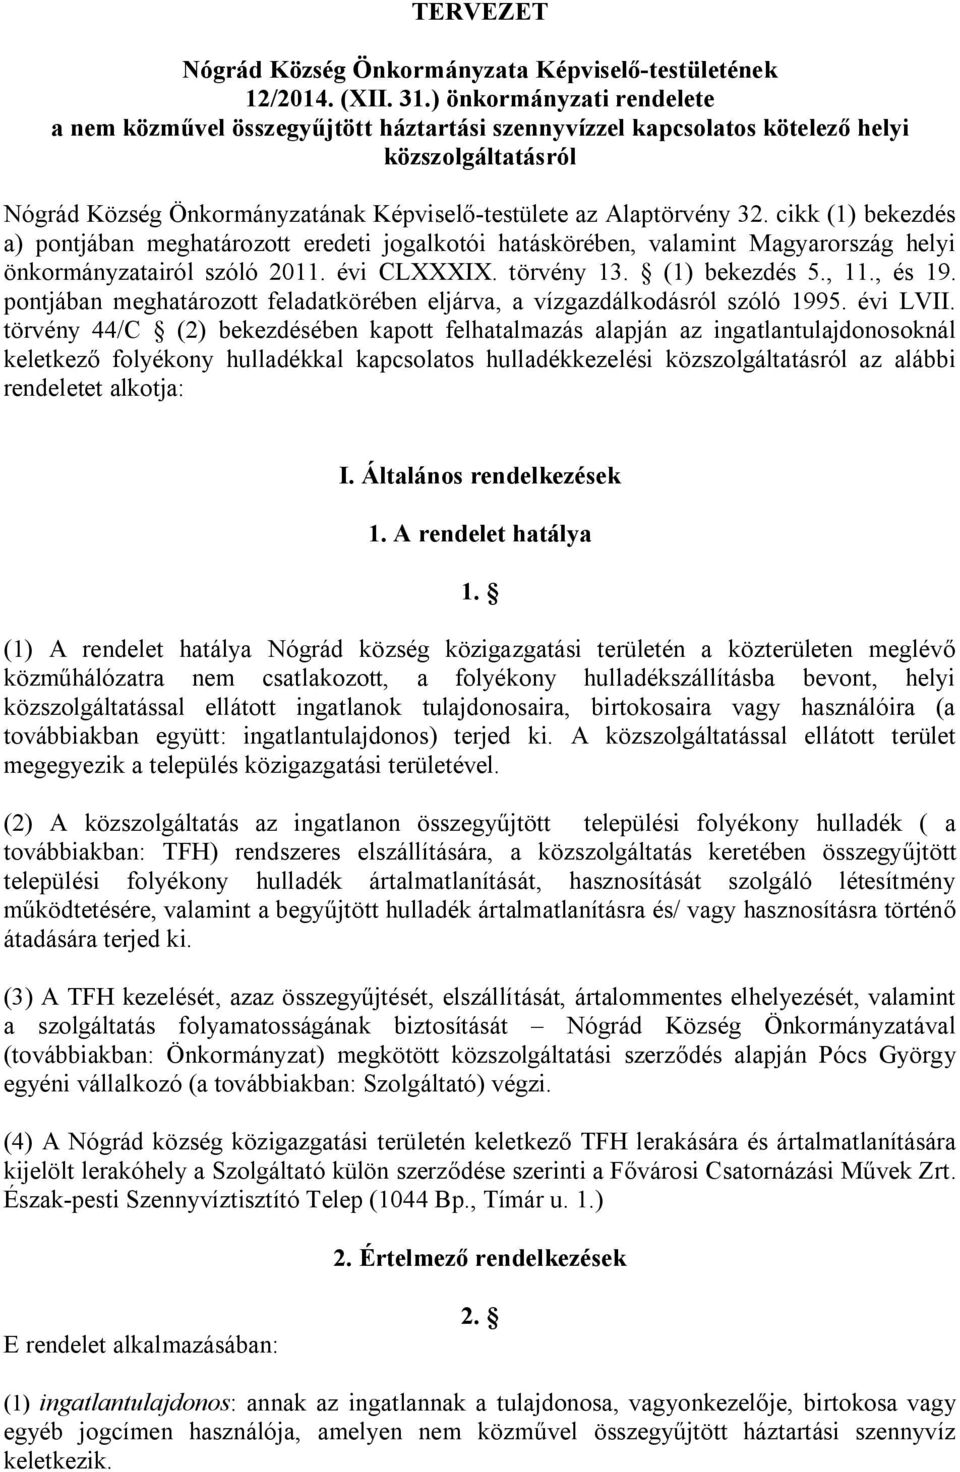 cikk (1) bekezdés a) pontjában meghatározott eredeti jogalkotói hatáskörében, valamint Magyarország helyi önkormányzatairól szóló 2011. évi CLXXXIX. törvény 13. (1) bekezdés 5., 11., és 19.